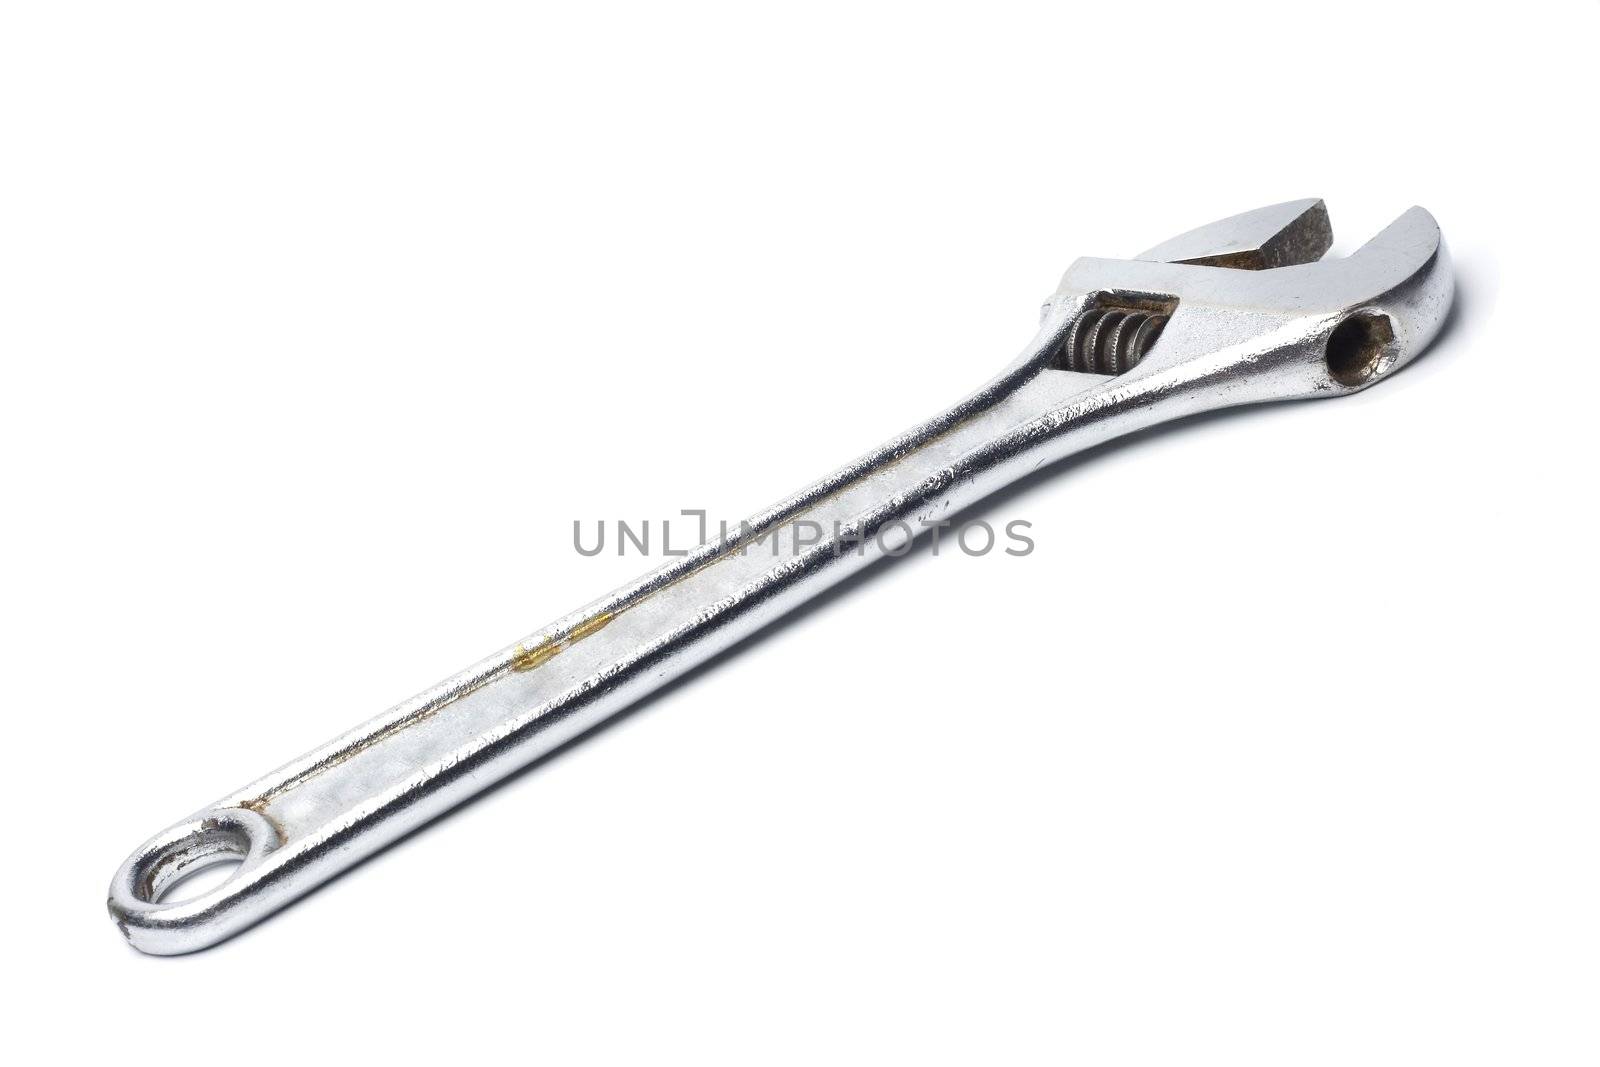 useful bricolage monkey wrench tool isolated on white bakcground